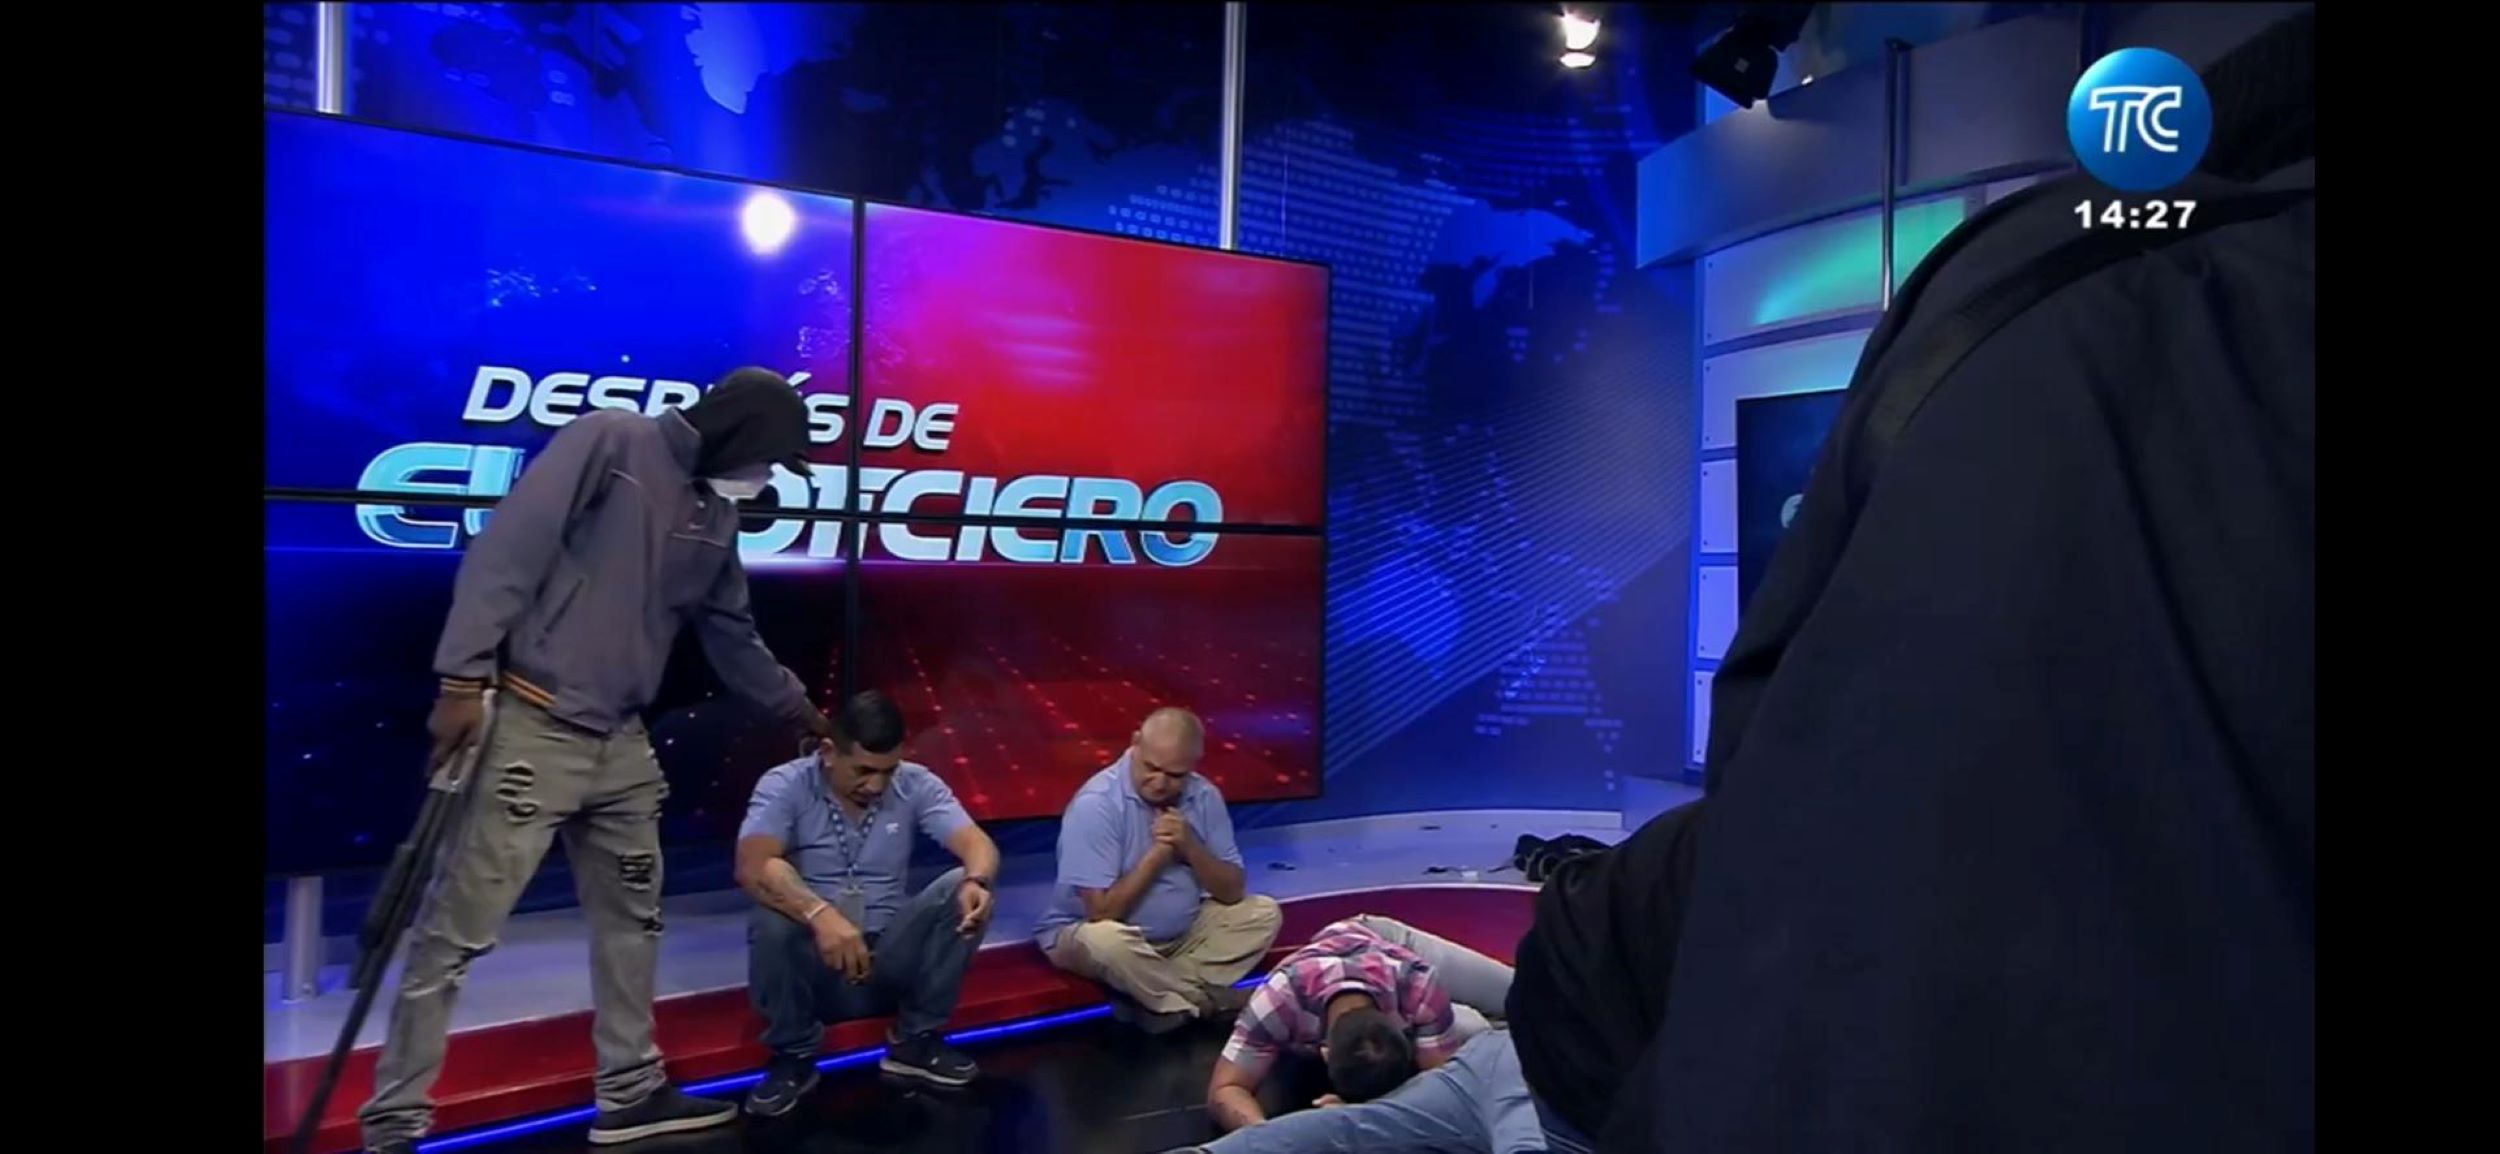 Membres de bandes armats assalten una televisió pública de l'Equador en directe | VÍDEO